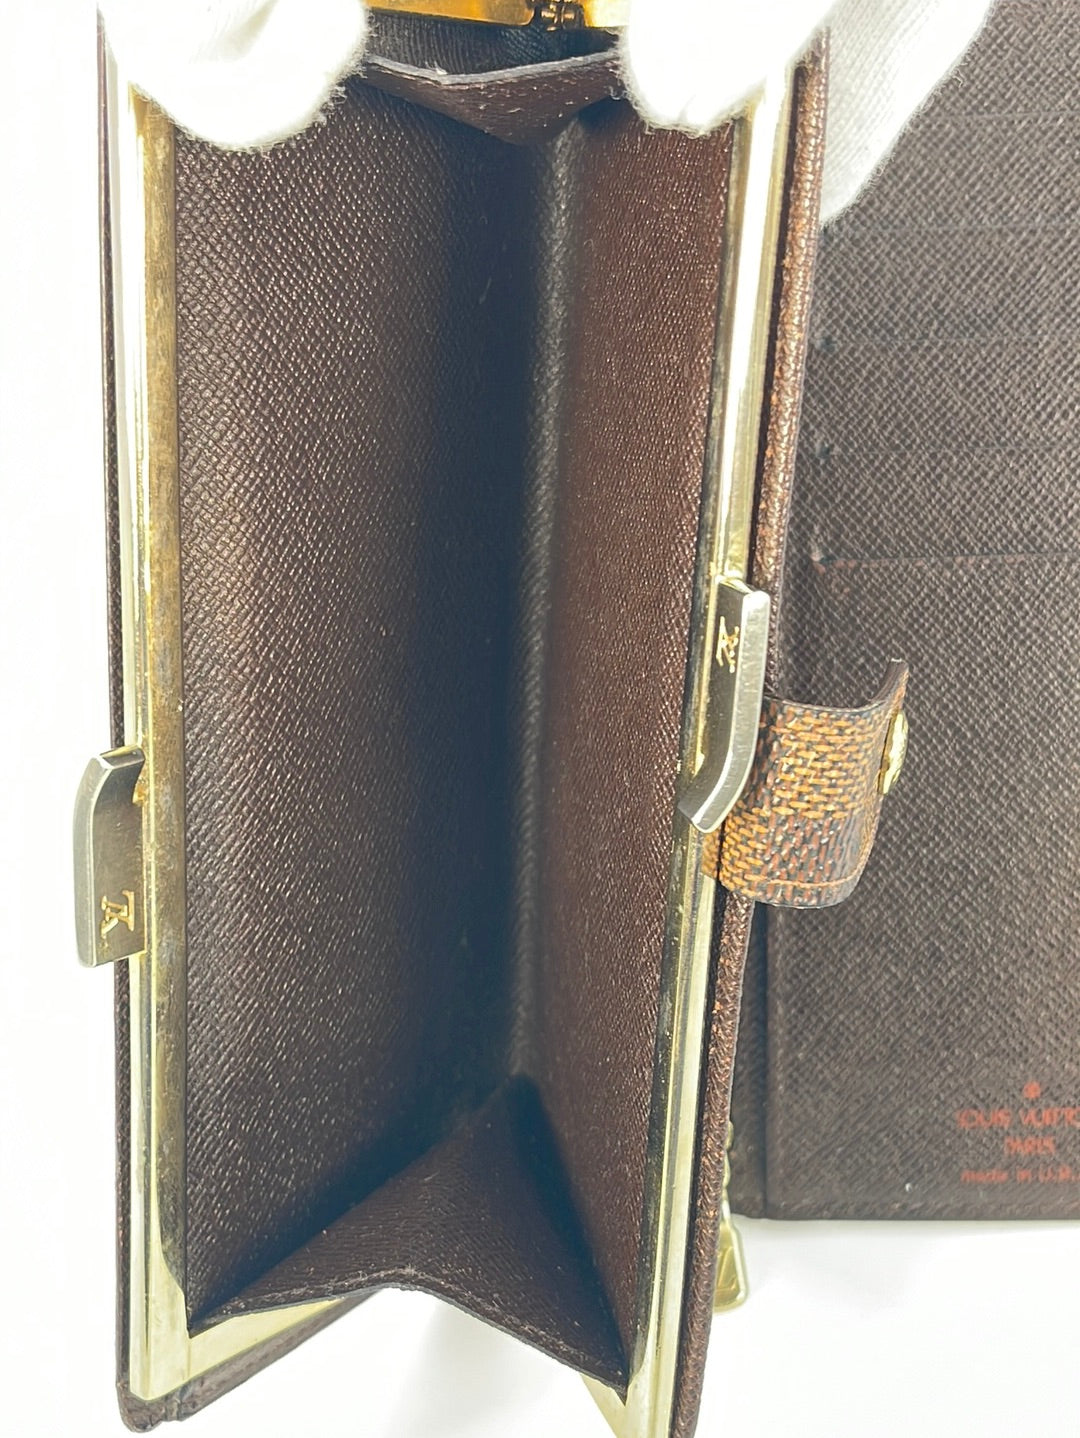 Preloved Vintage Louis Vuitton Damier Ebene Continental Bifold Wallet SD0989 032323